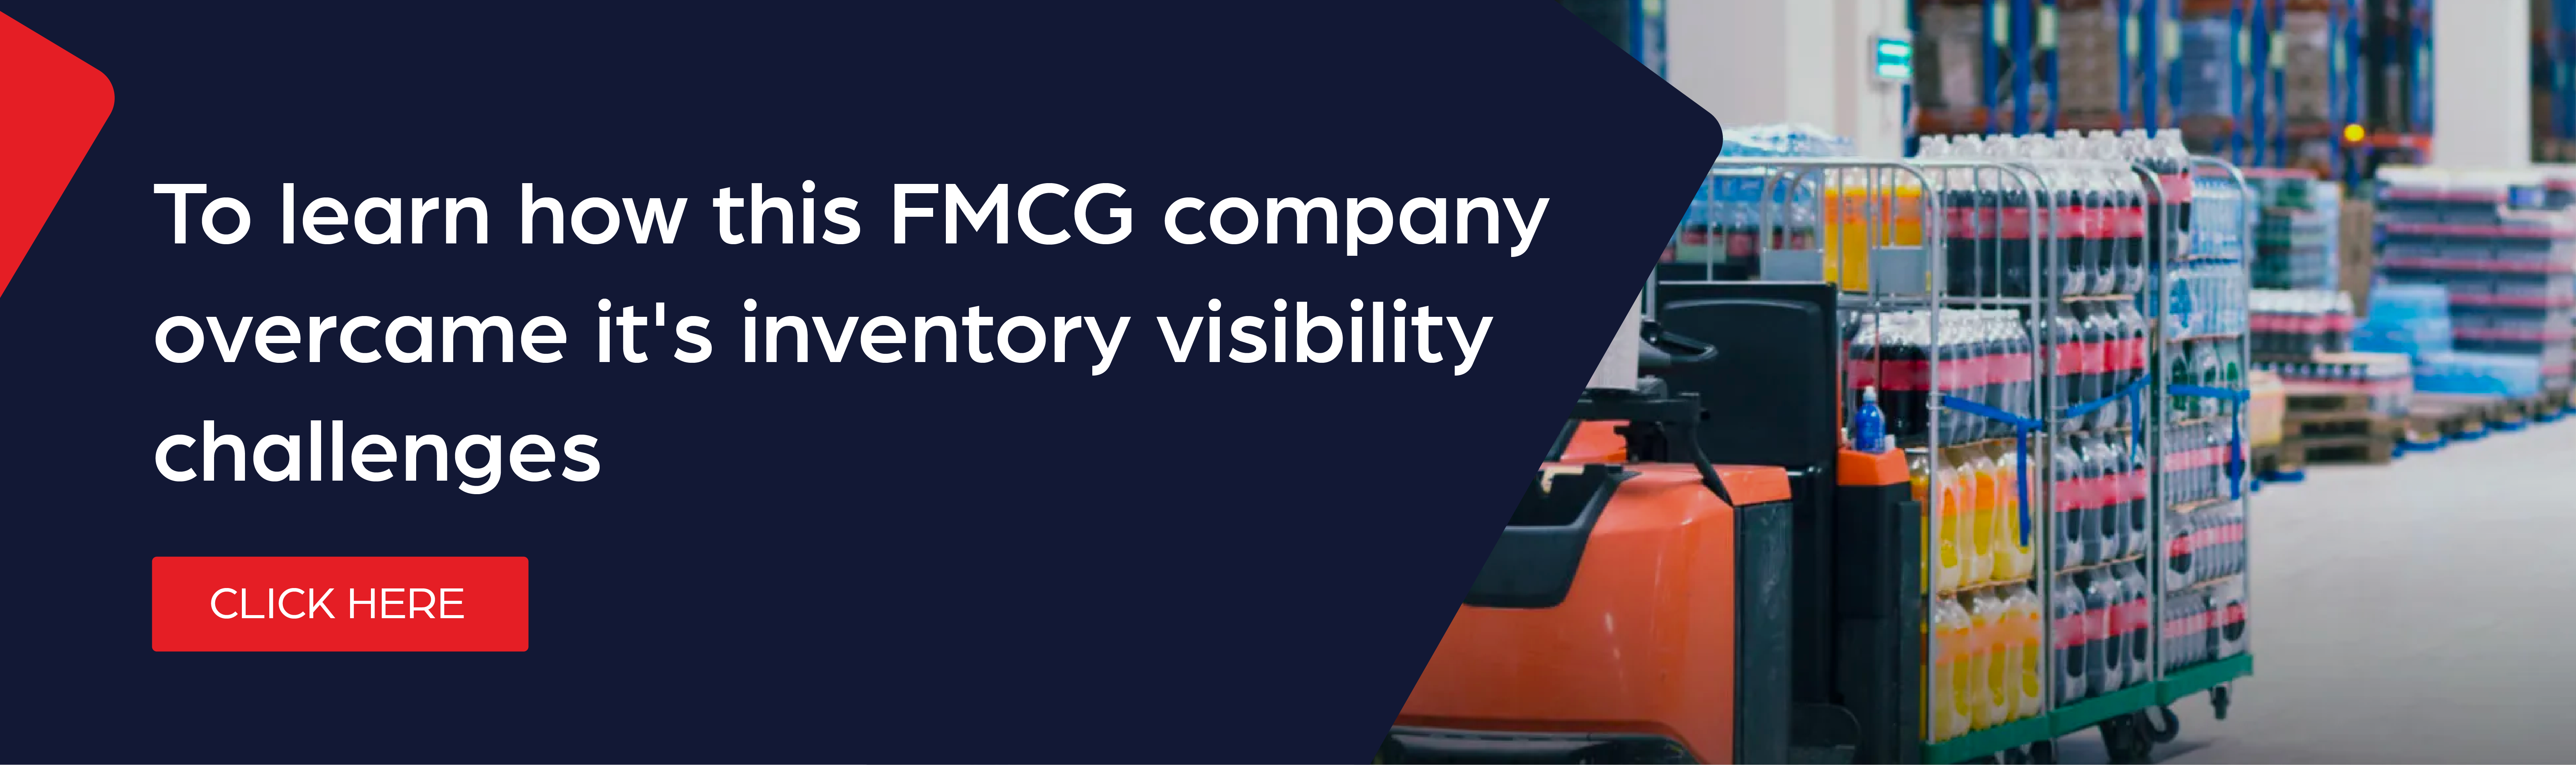 FMCG-Company-Digital-Transformation